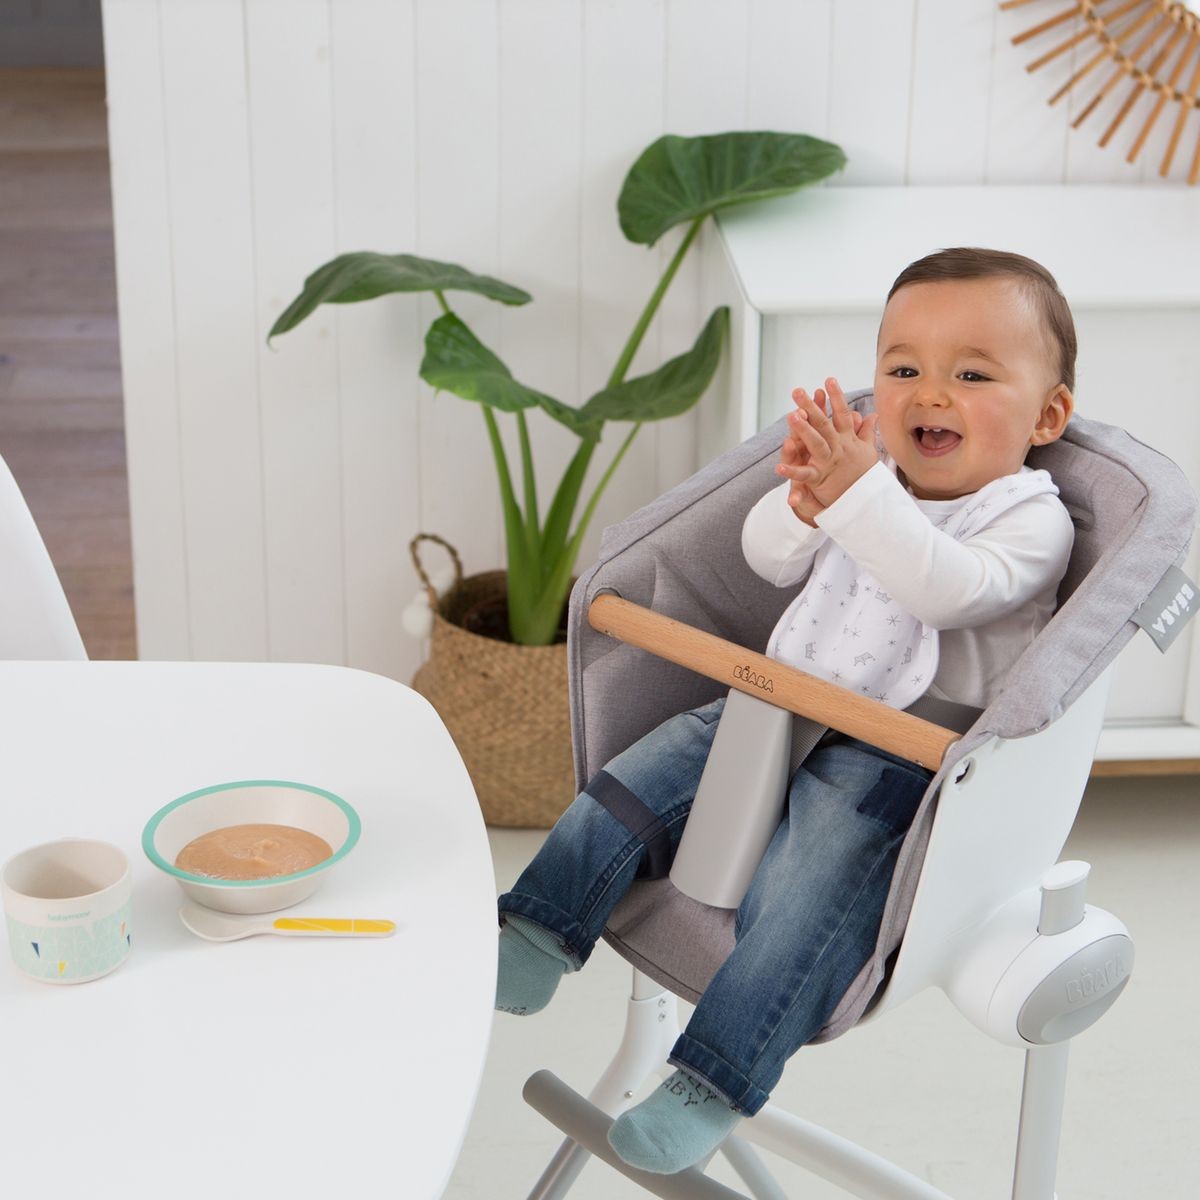 Chaise haute en bois évolutive : comment la choisir ? - Blog bébé